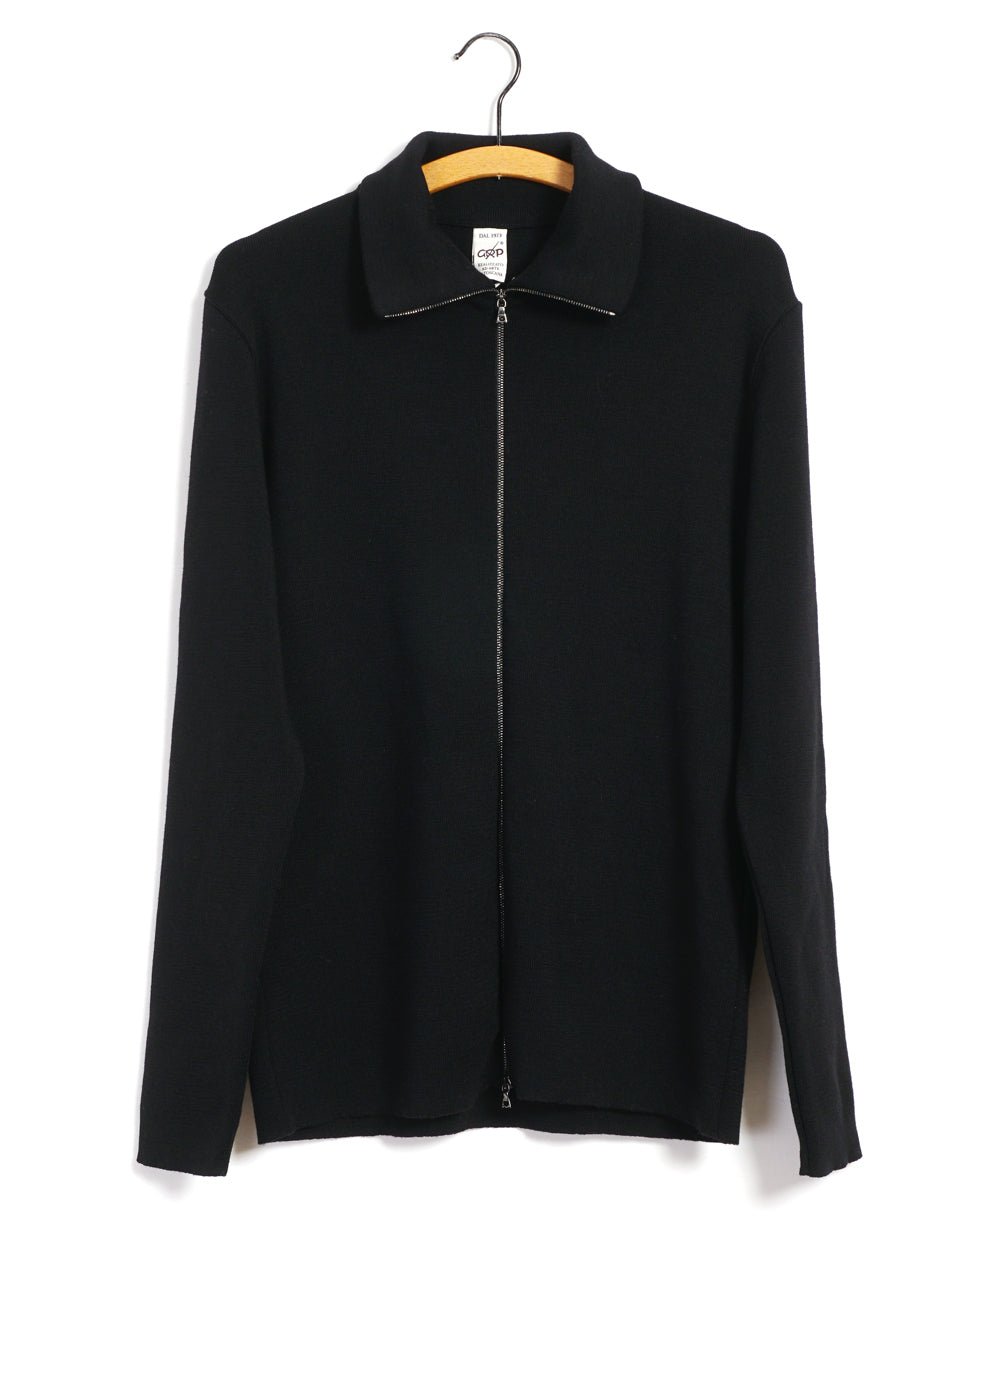 G.R.P - ZIP JACKET | Merino Wool Zip Jacket | Black - HANSEN Garments